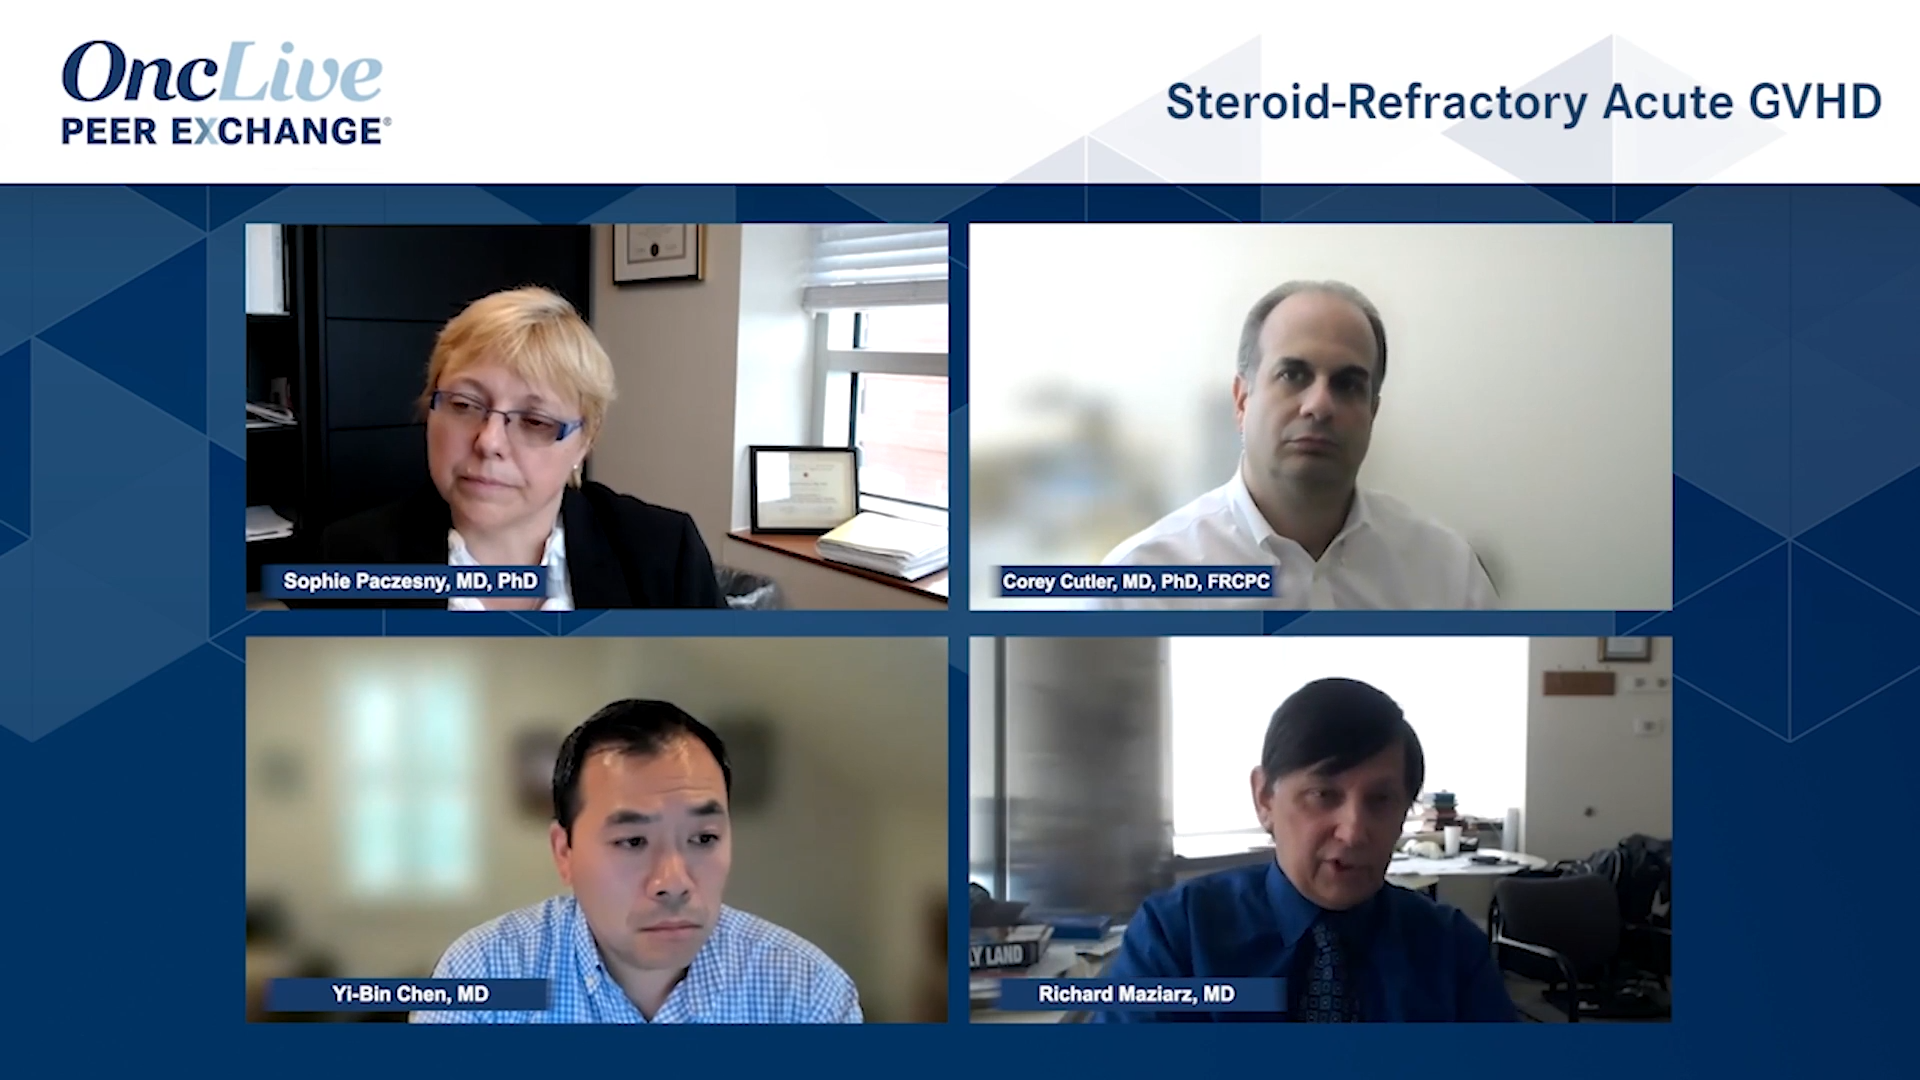 Steroid-Refractory Acute GVHD